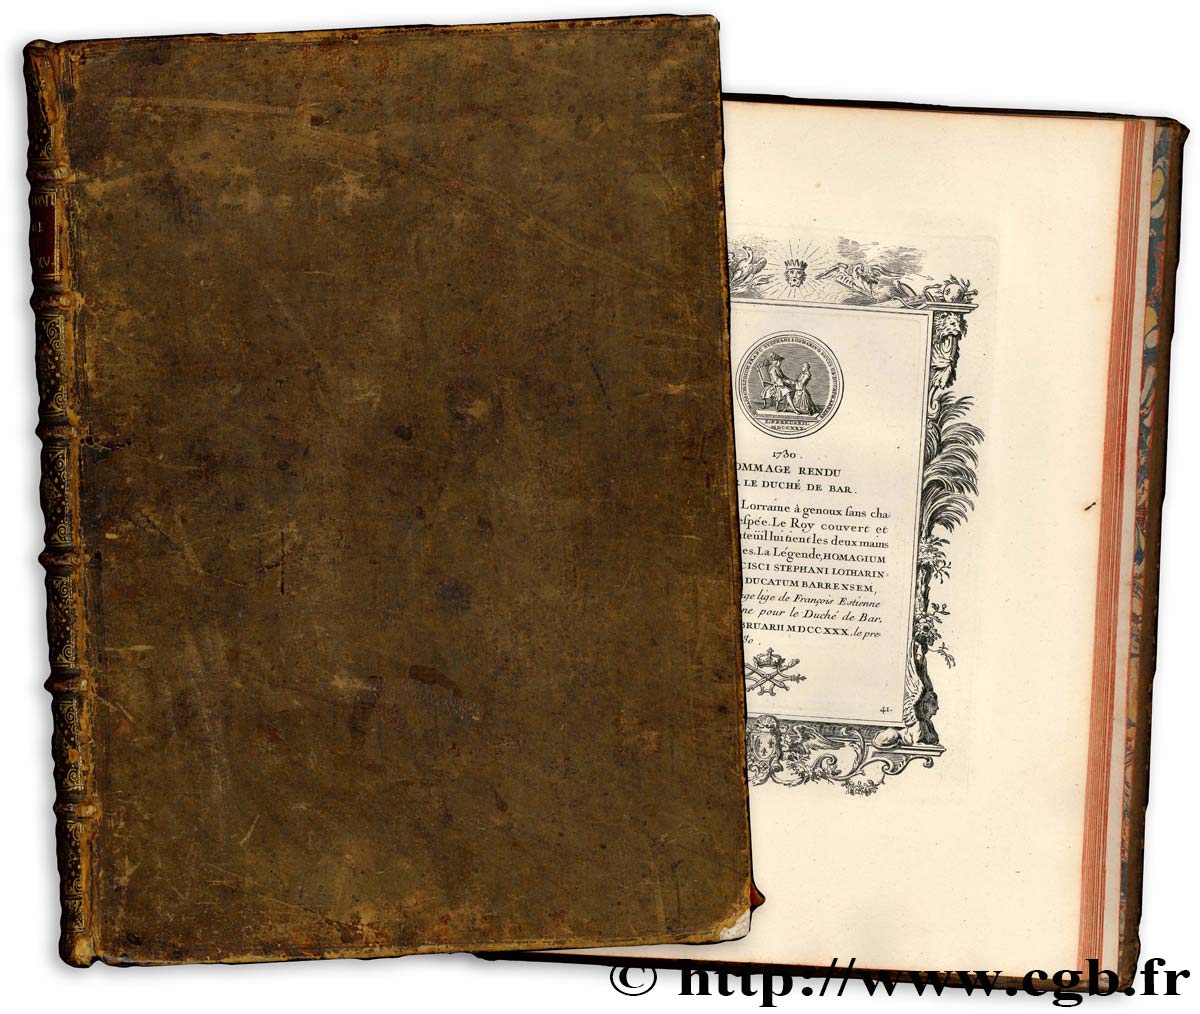 BOOKS Godonnesche (Nicolas) “Médailles du règne de Louis XV”. S.l.n.d. (c. 1736) n.d.  fVZ